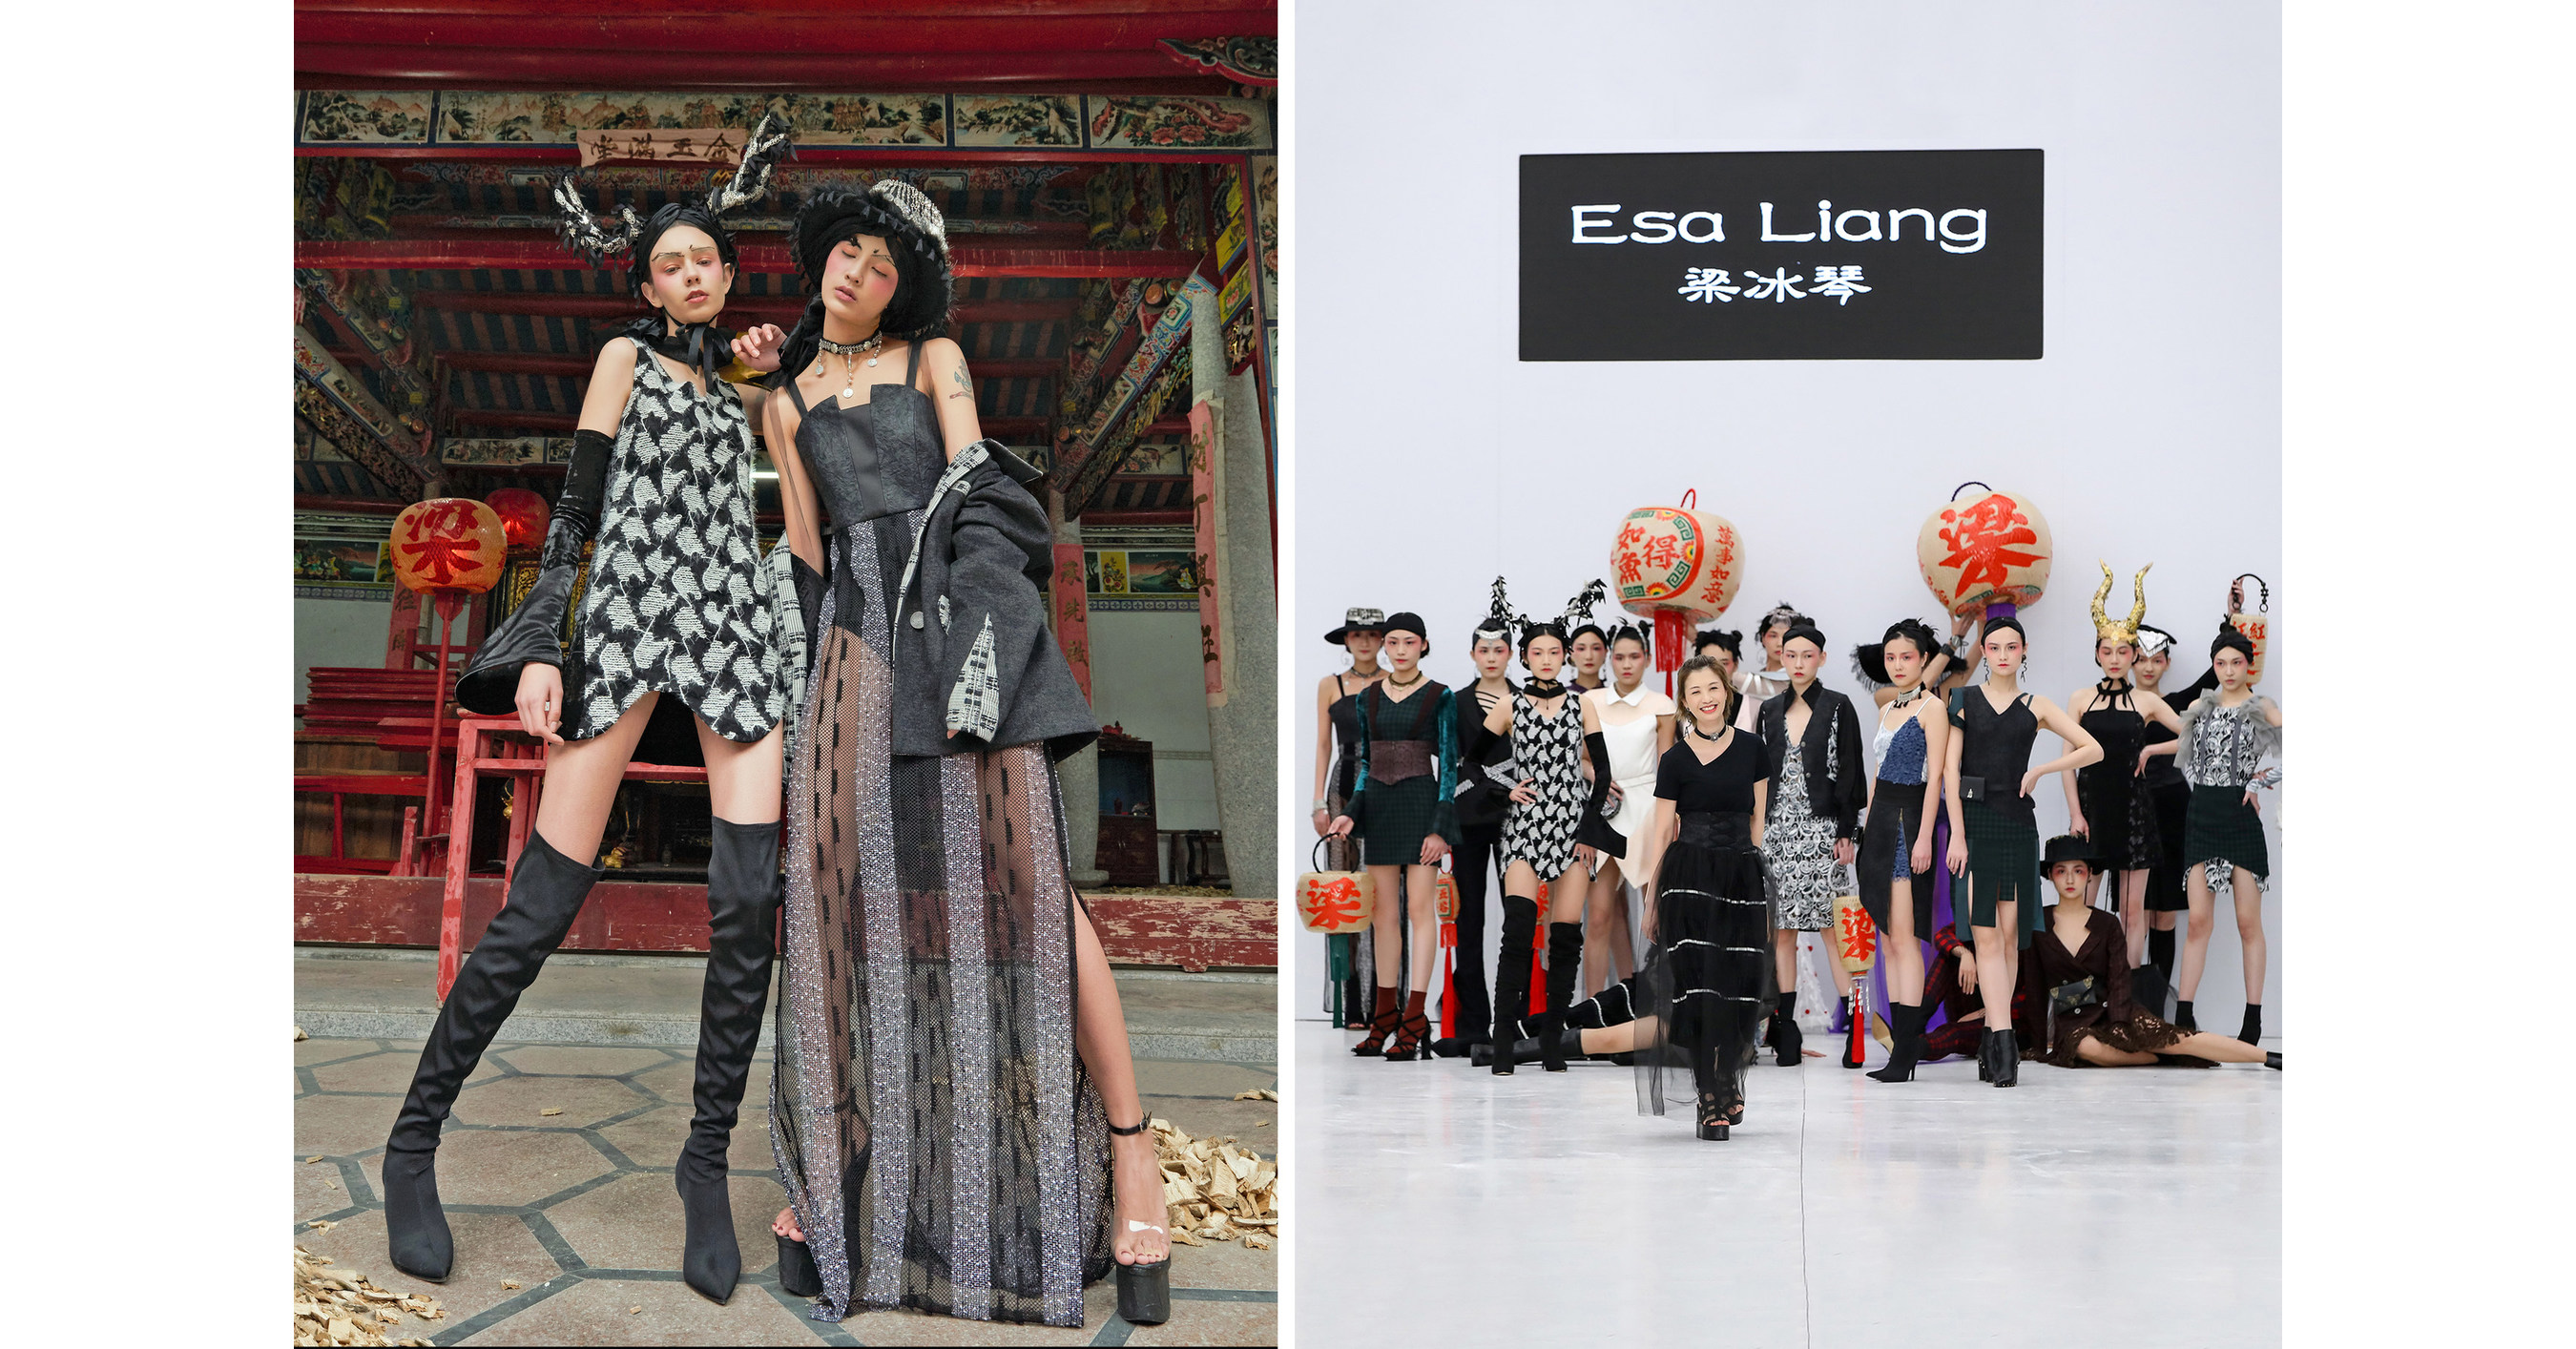 https://mma.prnewswire.com/media/655722/Esa_Liang_Fashion_week.jpg?p=facebook